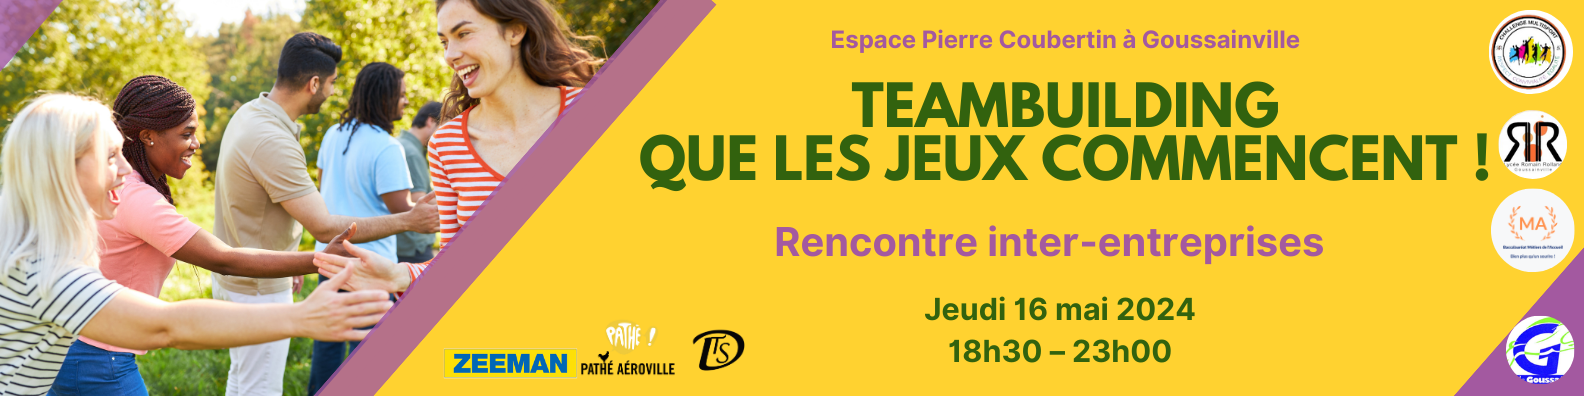 Team Building “Que comecem os jogos” em Goussainville em 16 de maio de 2024